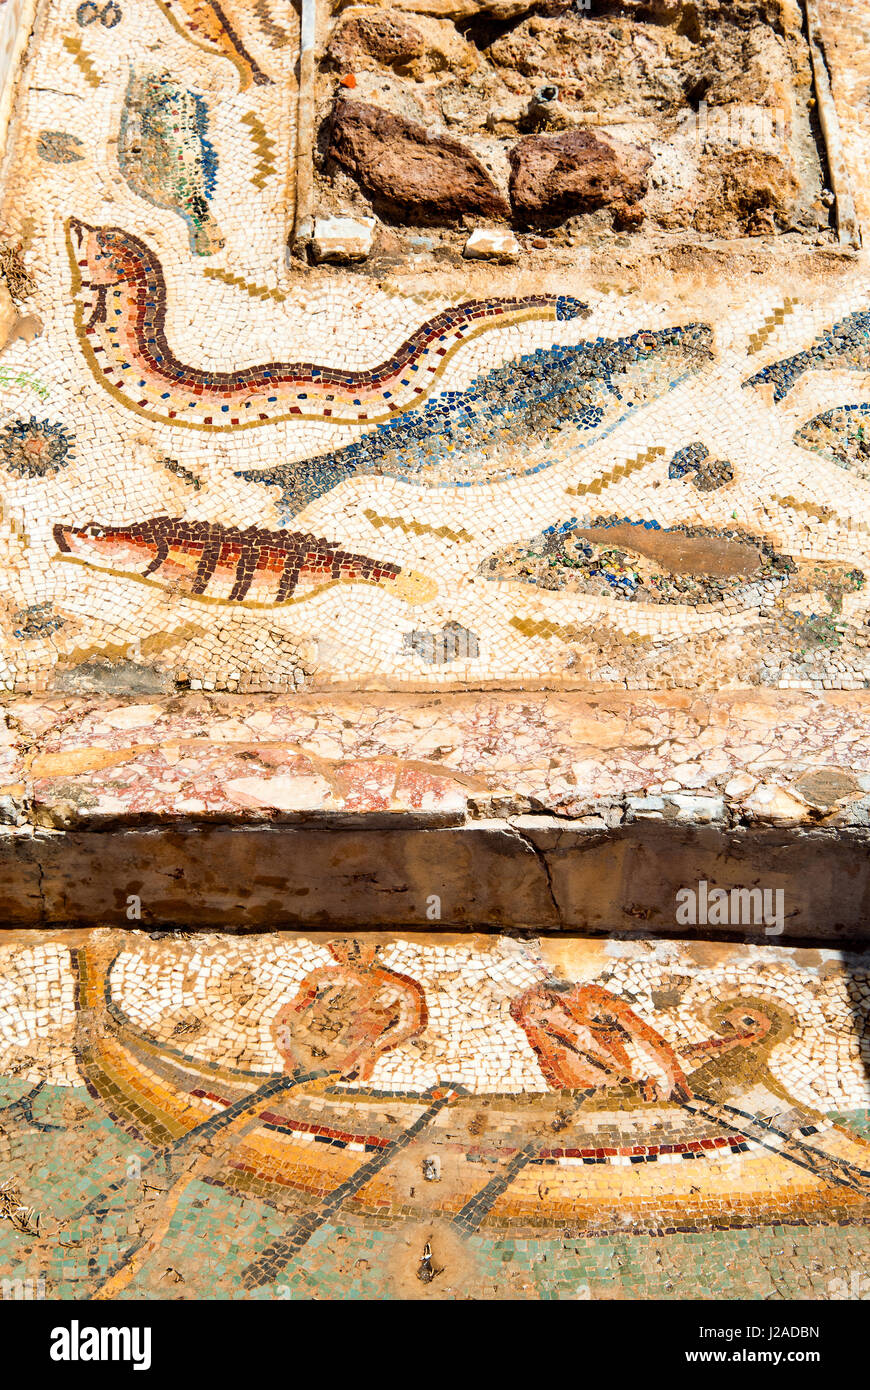 Mosaik von Fischer und Fische, Utica punischen und römischen archäologischen Stätte, Tunesien, Nordafrika Stockfoto